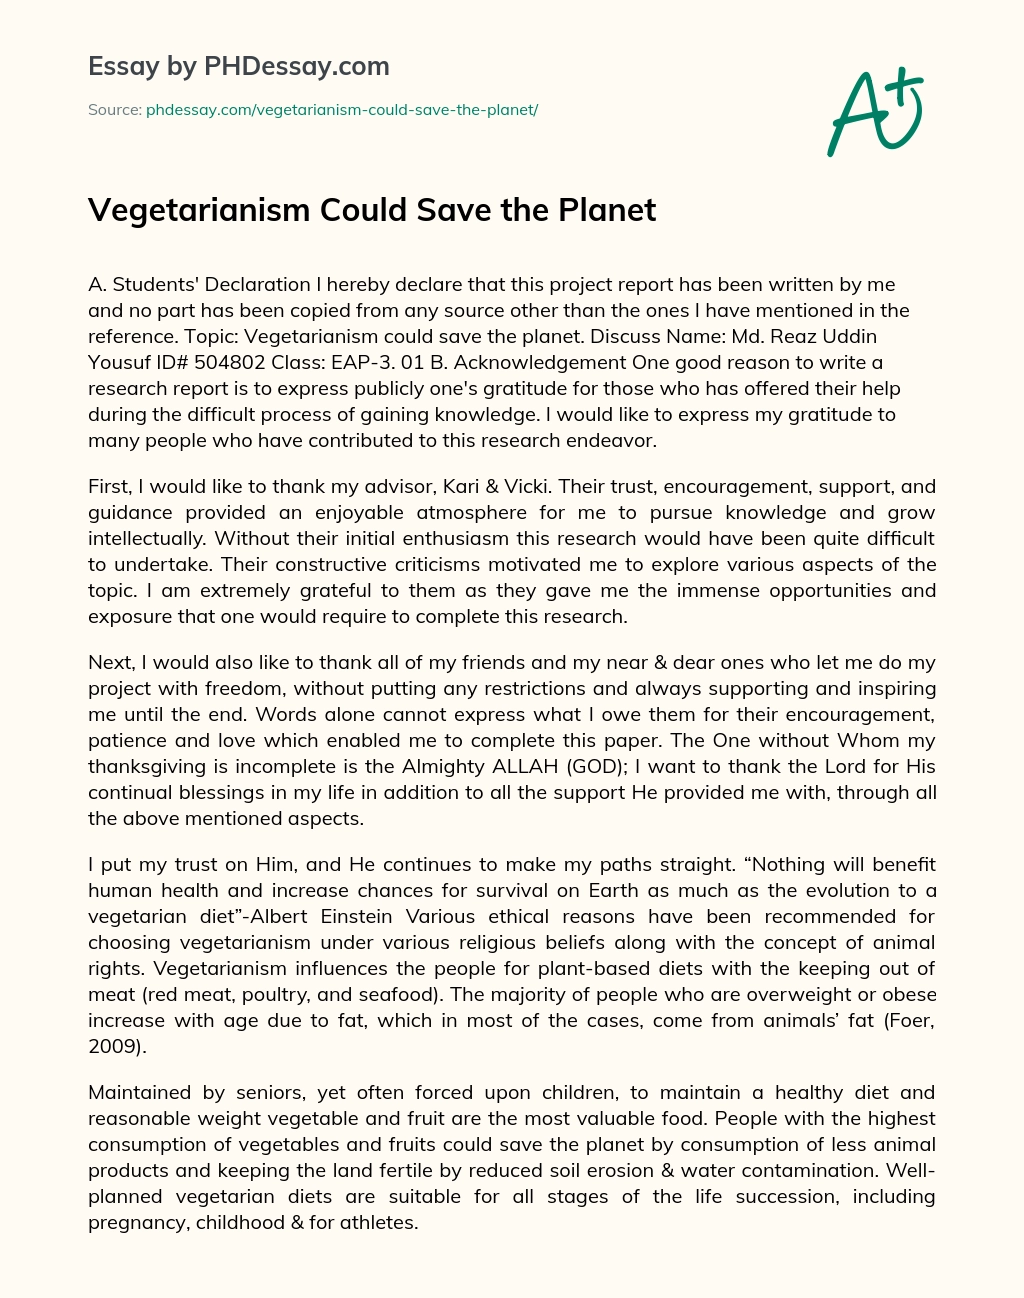 being vegetarian essay